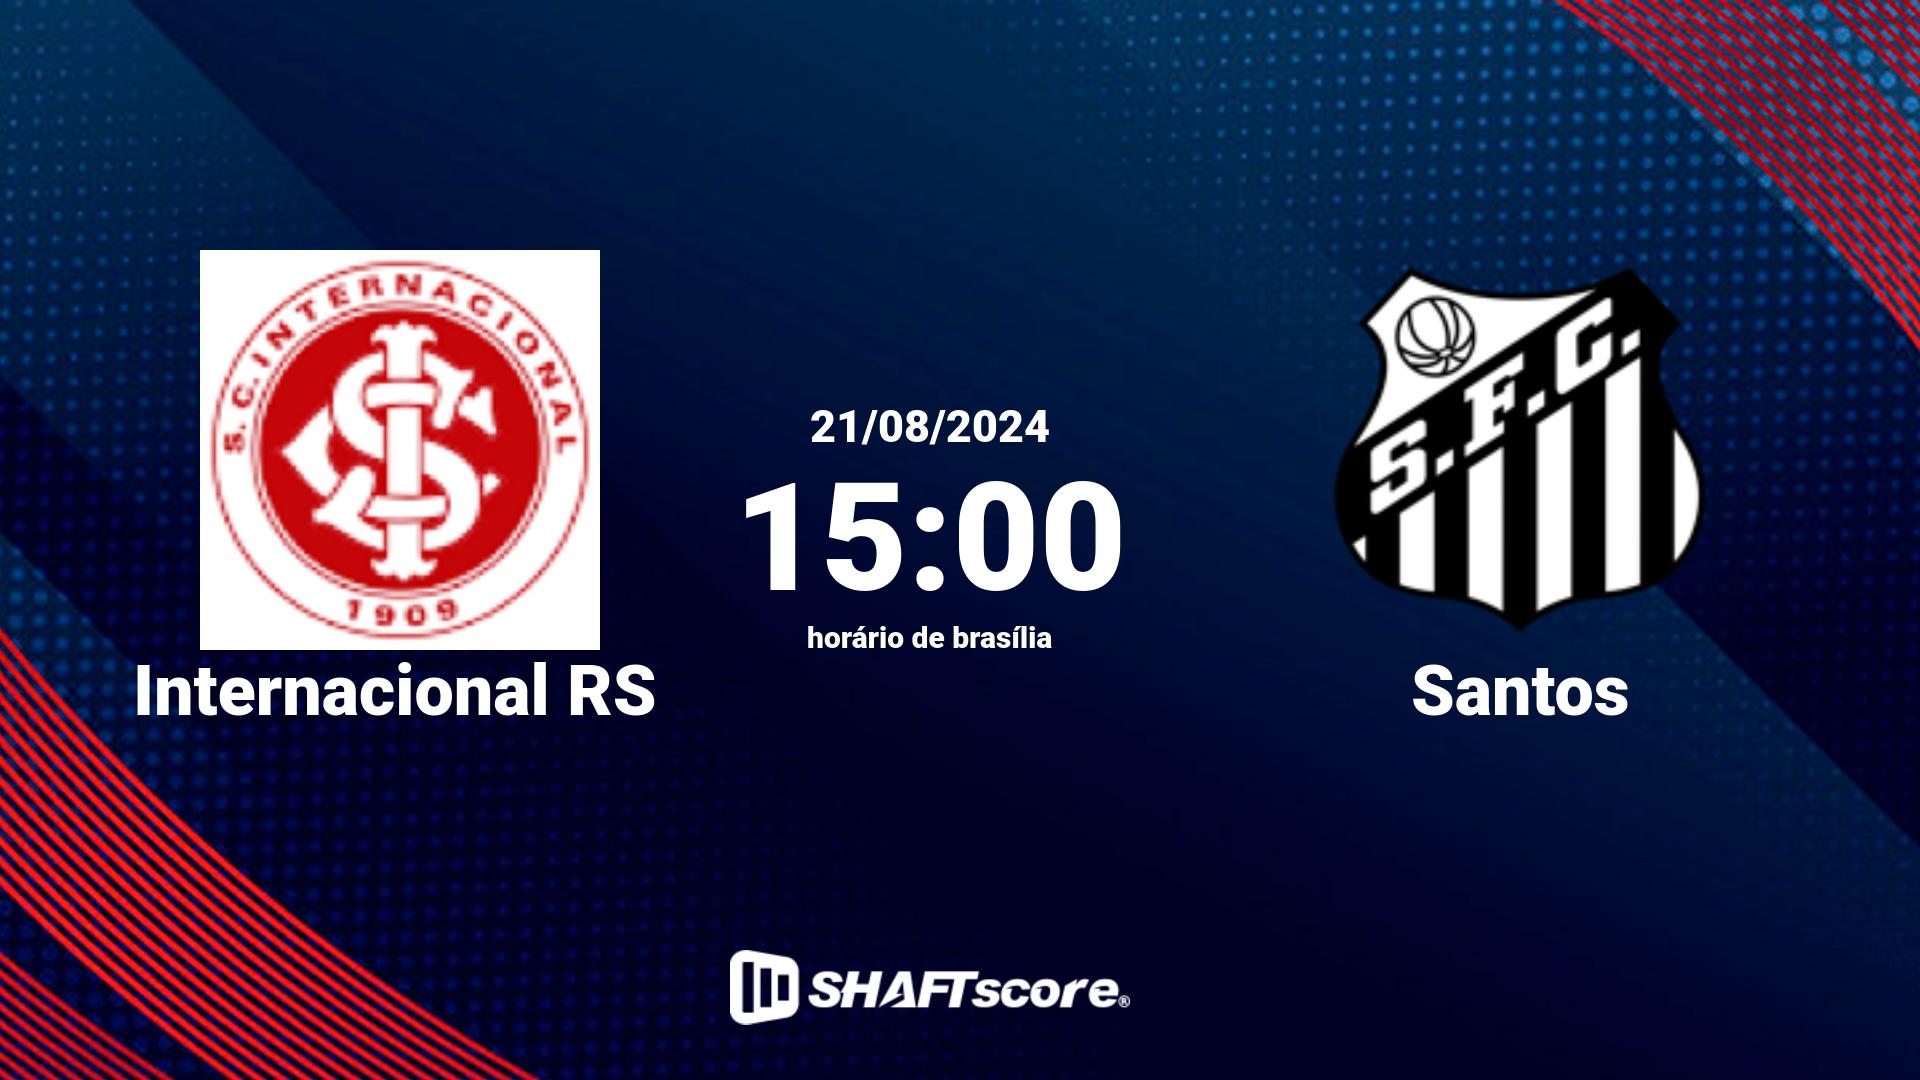 Estatísticas do jogo Internacional RS vs Santos 27.06 15:00